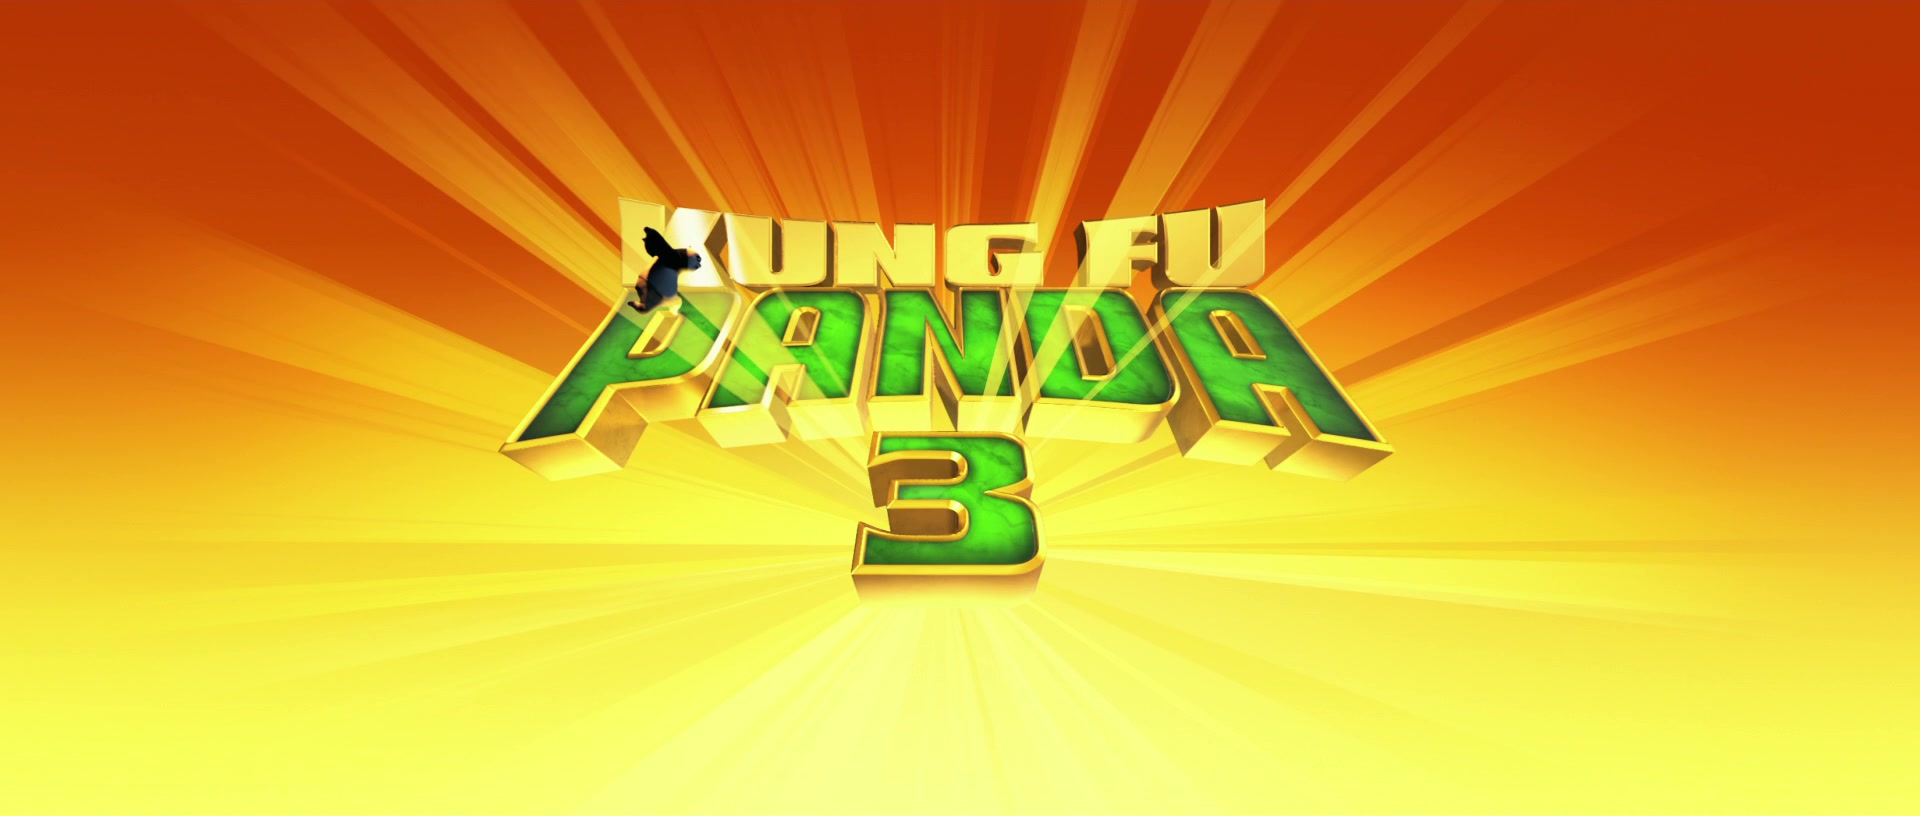 kung fu panda 3 show times